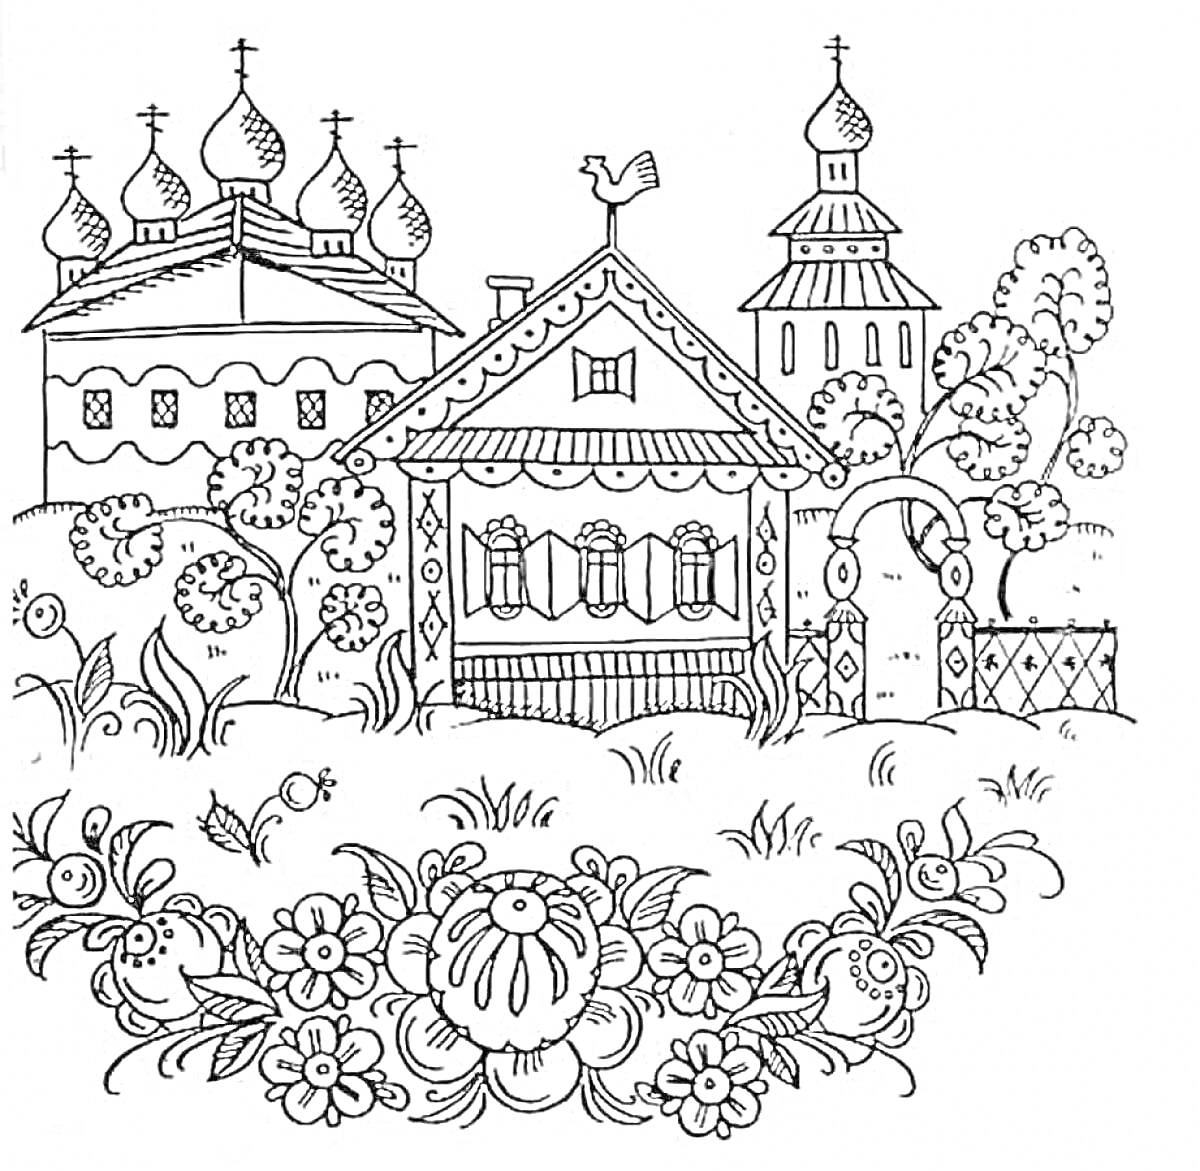 Деревенская сцена с церквями и домом, украшенная цветочным орнаментом